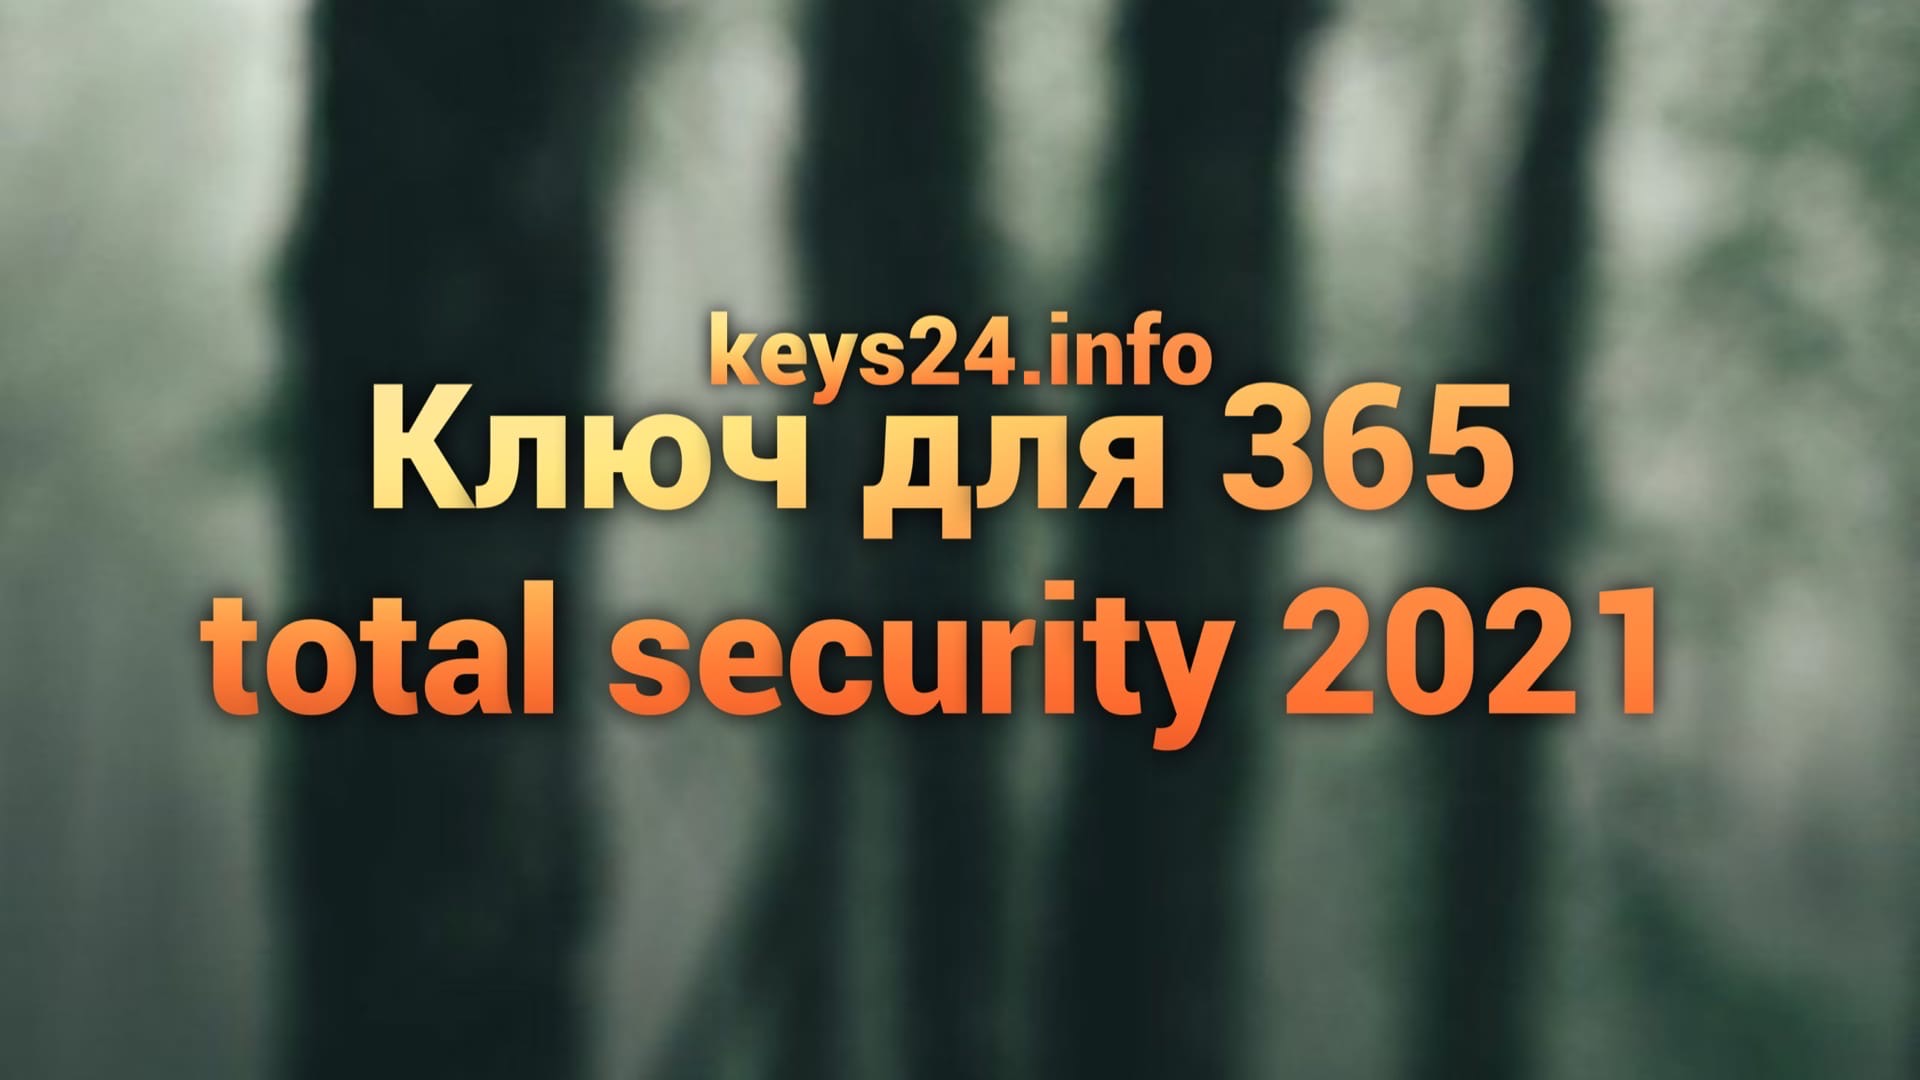 kluch dlya 365 total security 2021